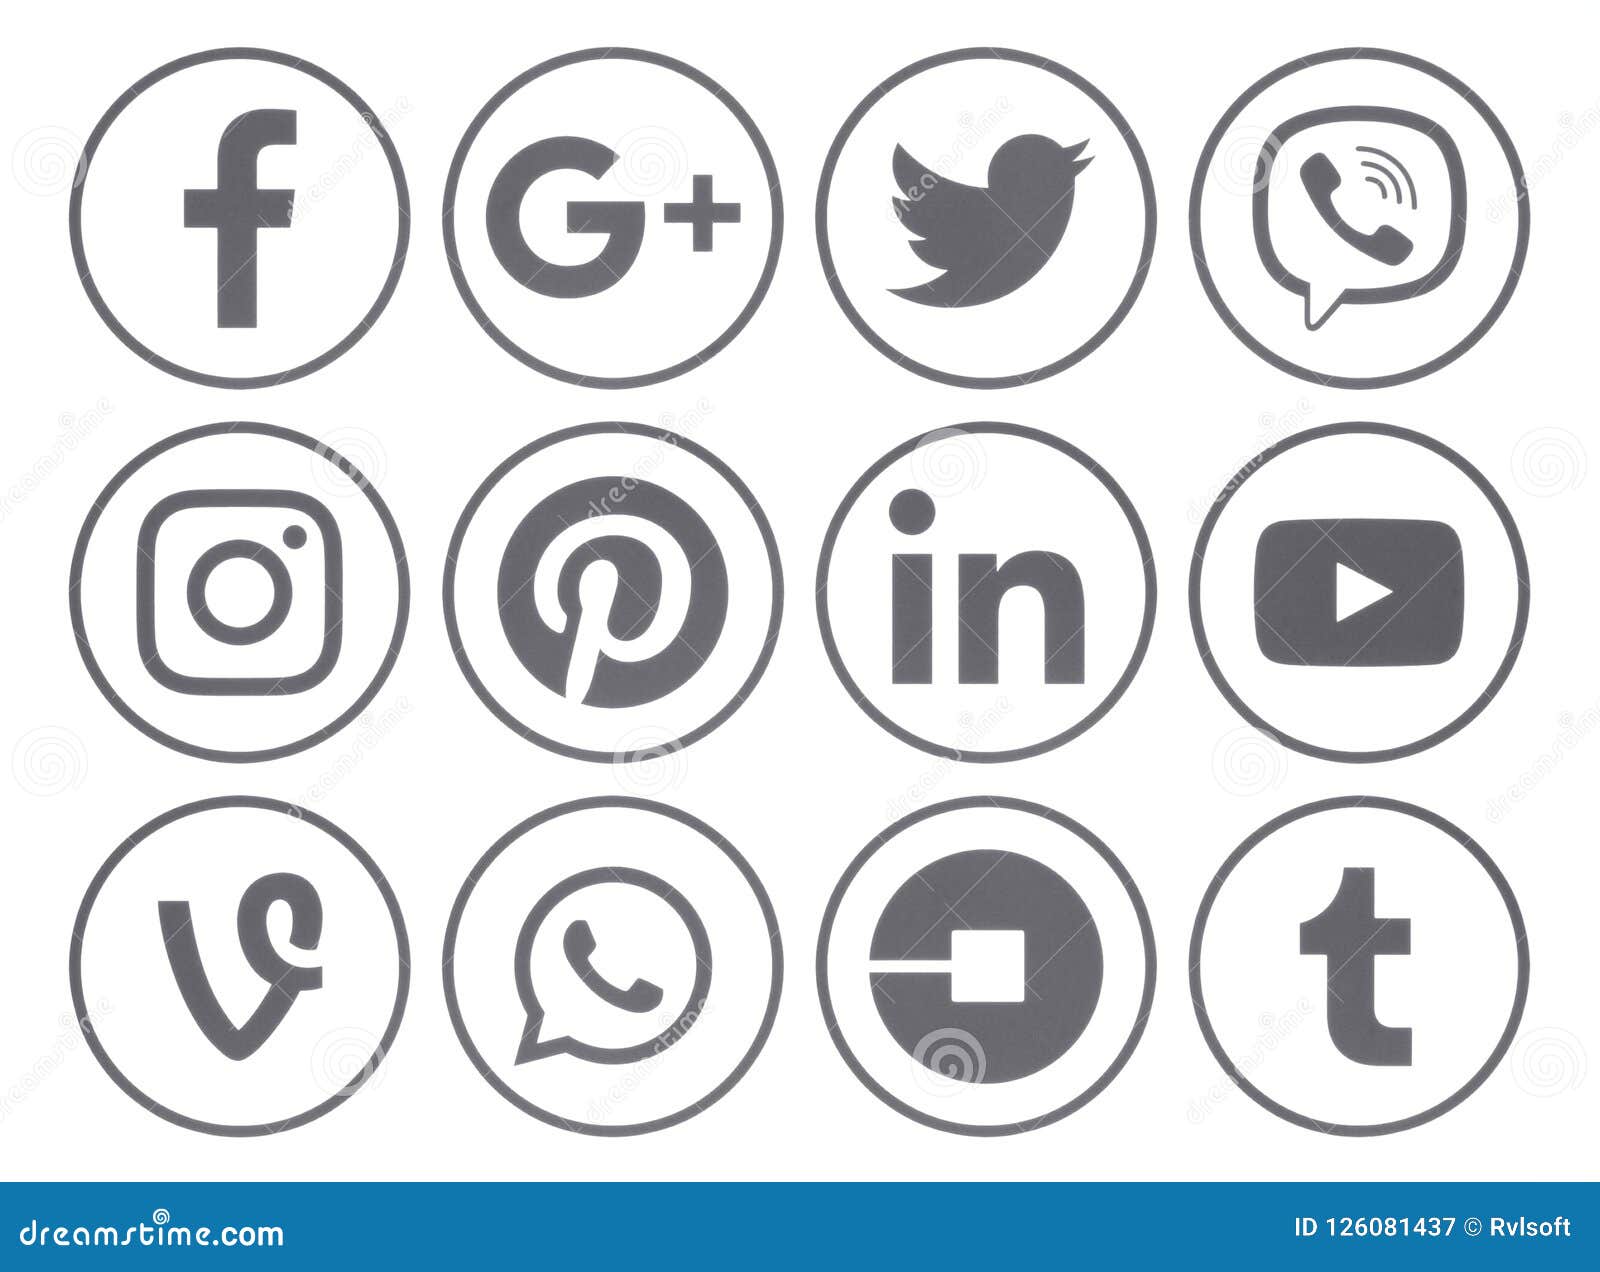 isla primer ministro Humorístico Social Media Gray Icons Stock Illustrations – 1,512 Social Media Gray Icons  Stock Illustrations, Vectors & Clipart - Dreamstime